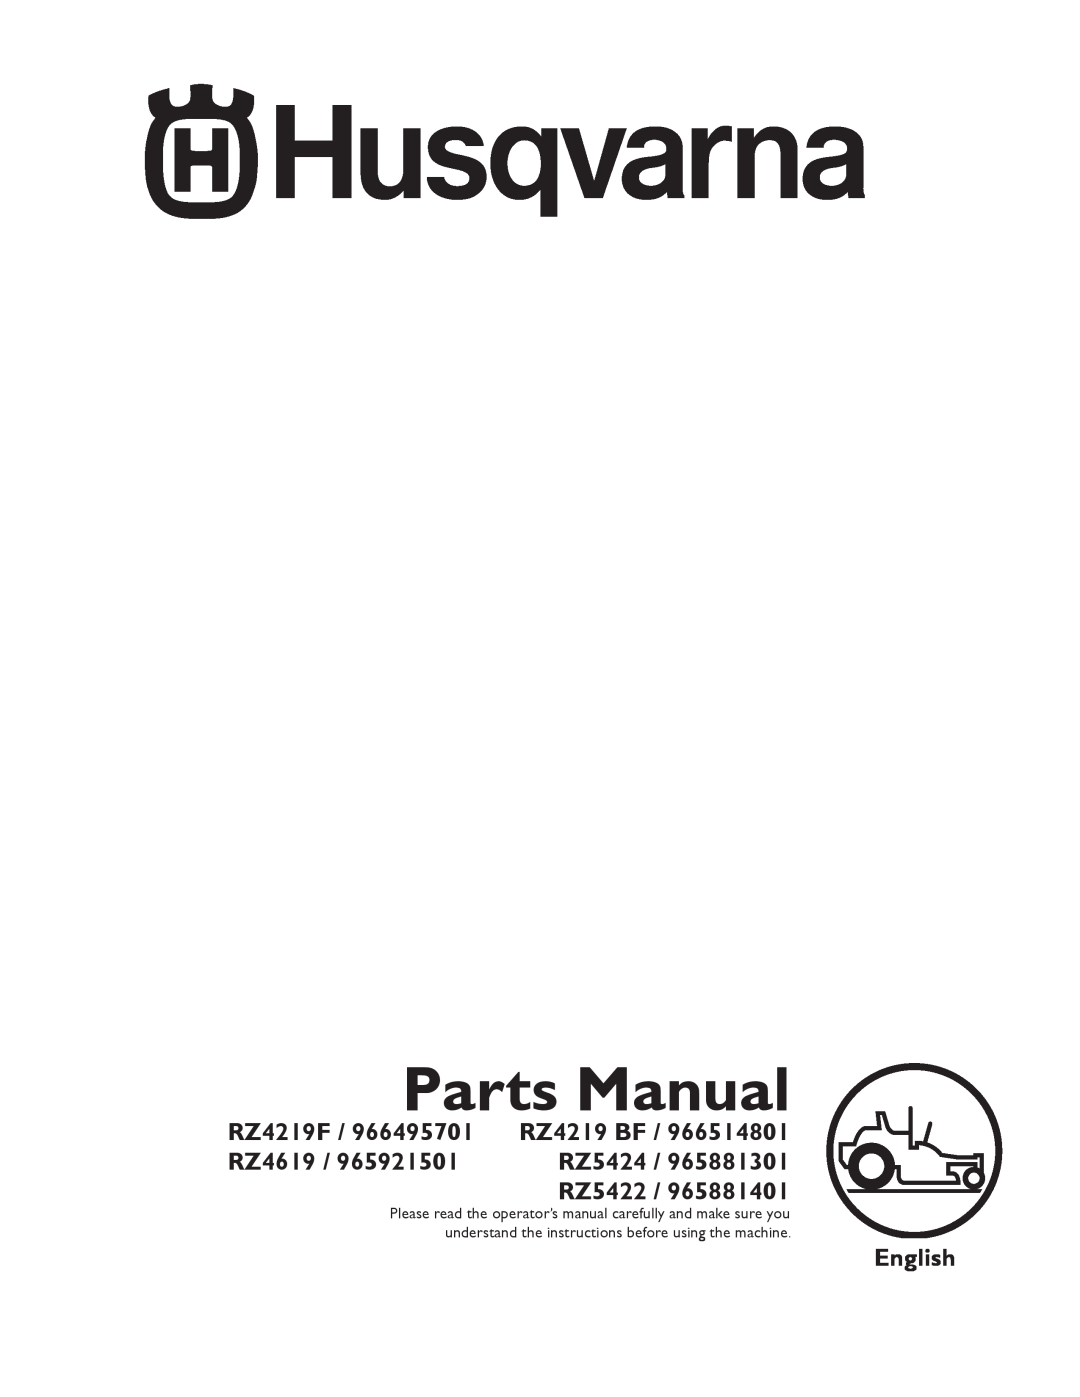 Husqvarna 965881301, 965881401, 965881201 manual Operator Manual, English, RZ4219 / RZ4620 / RZ5424 / RZ5422 / RZ4619 